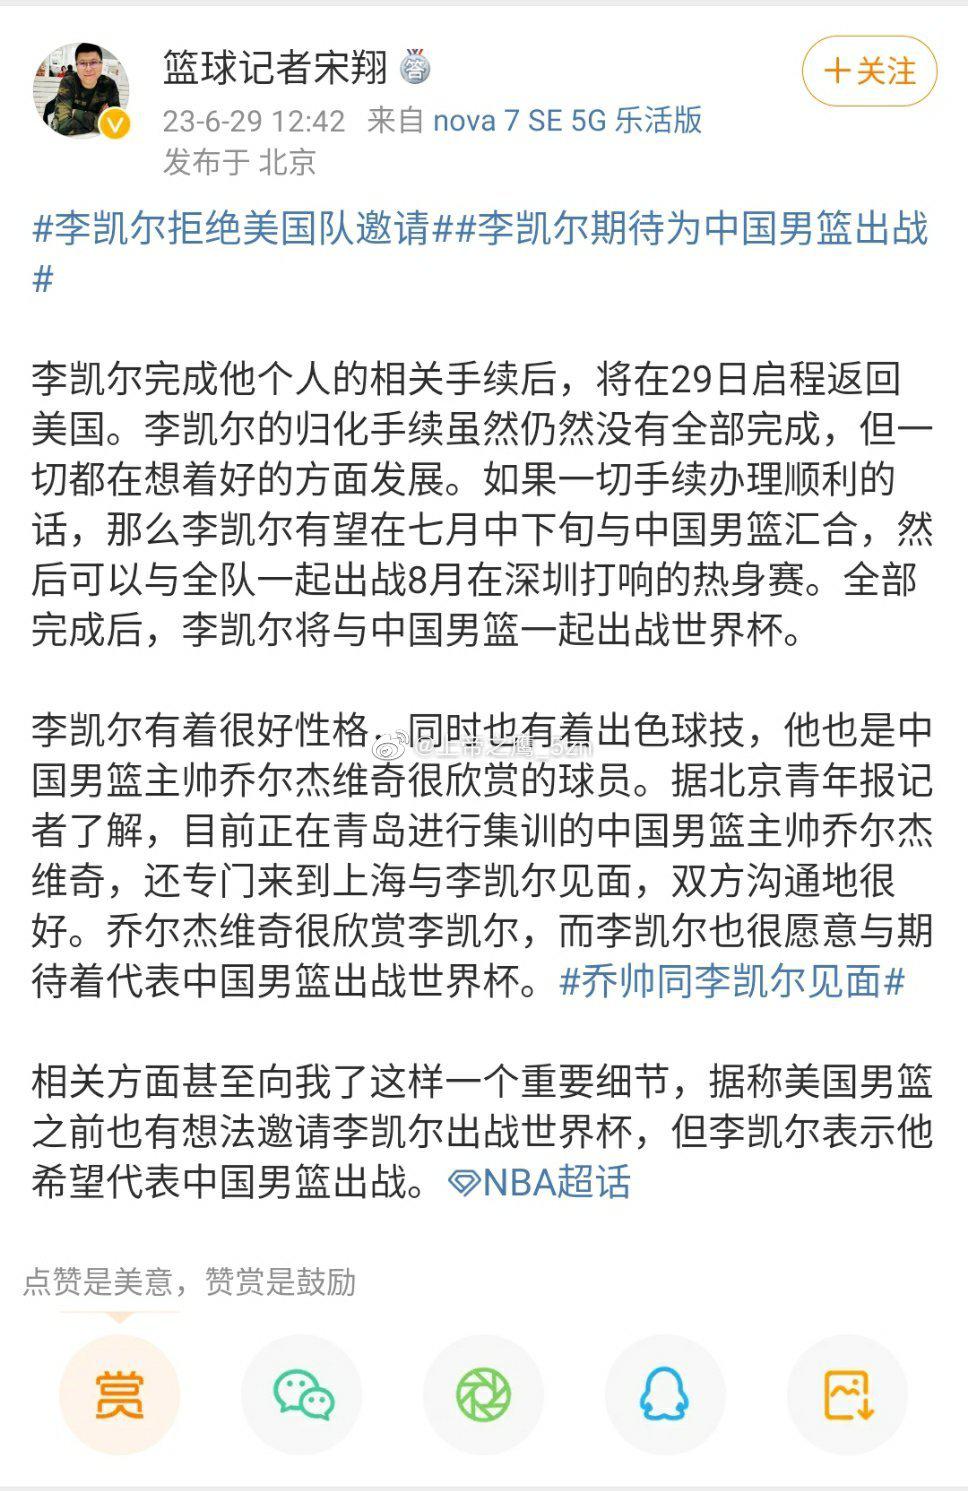 据篮球记者宋翔爆料，李凯尔为了替中国男篮出战，曾拒绝了美国男篮的邀请。另据杨毅助